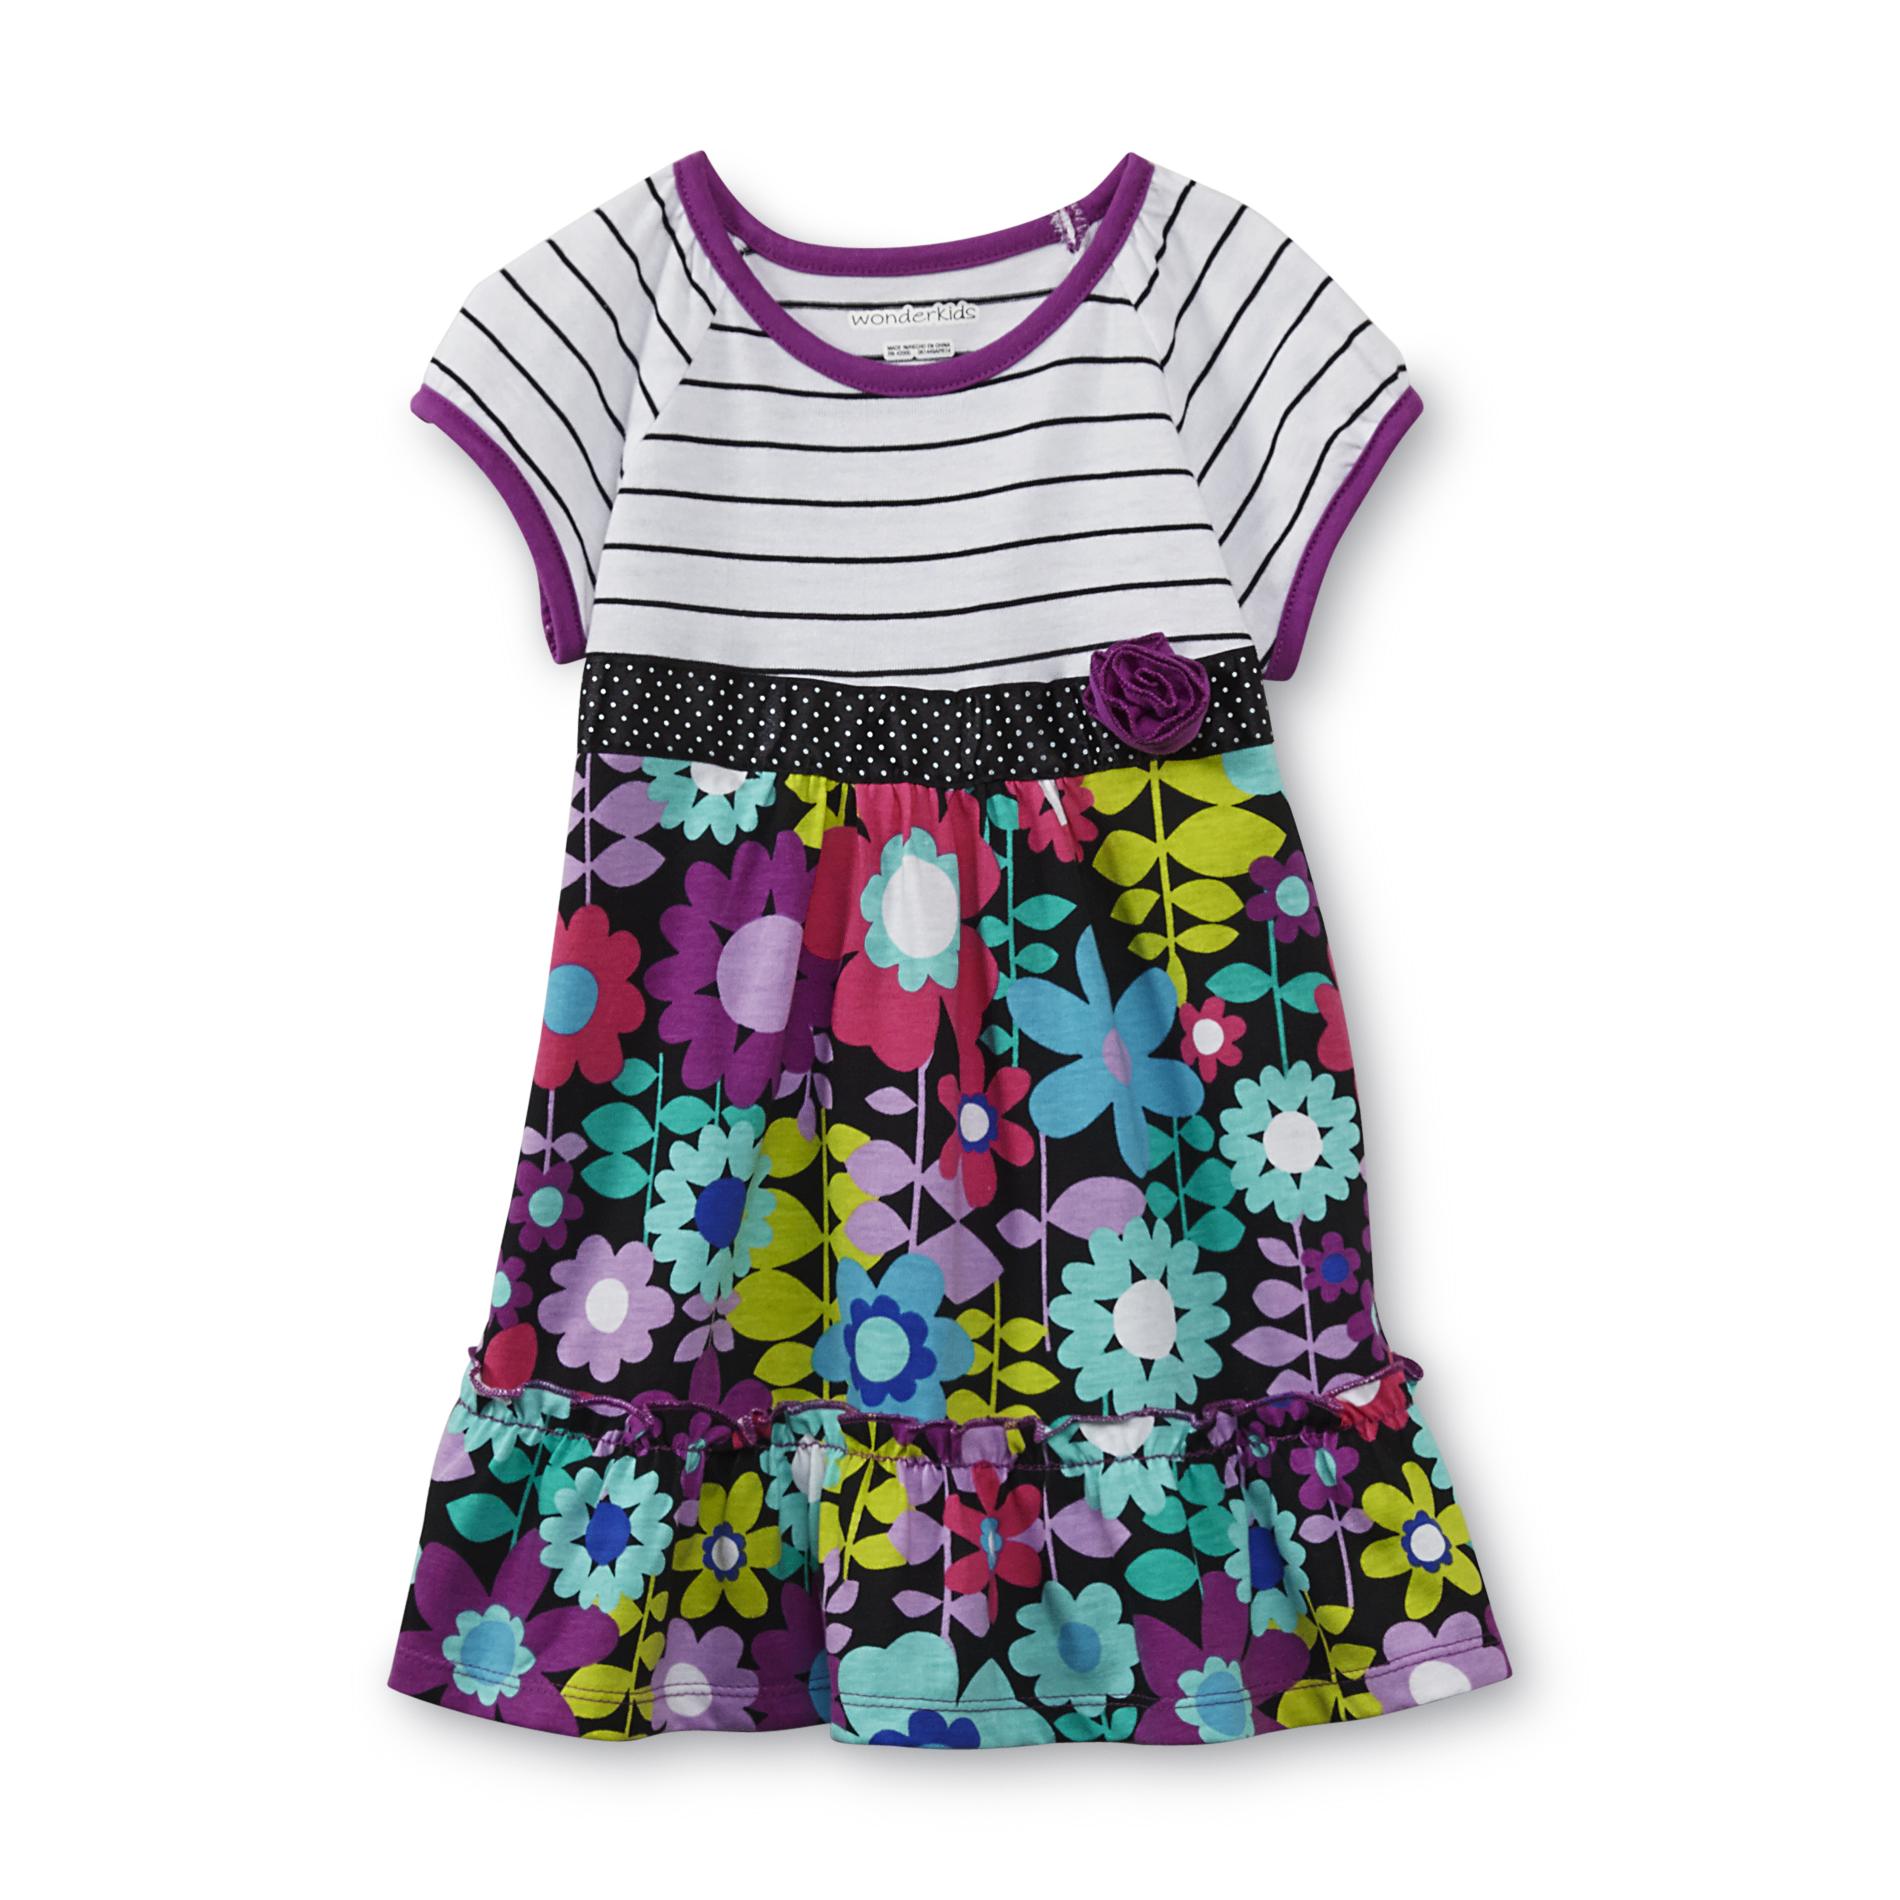 WonderKids Infant & Toddler Girl's Short-Sleeve Dress - Floral & Striped